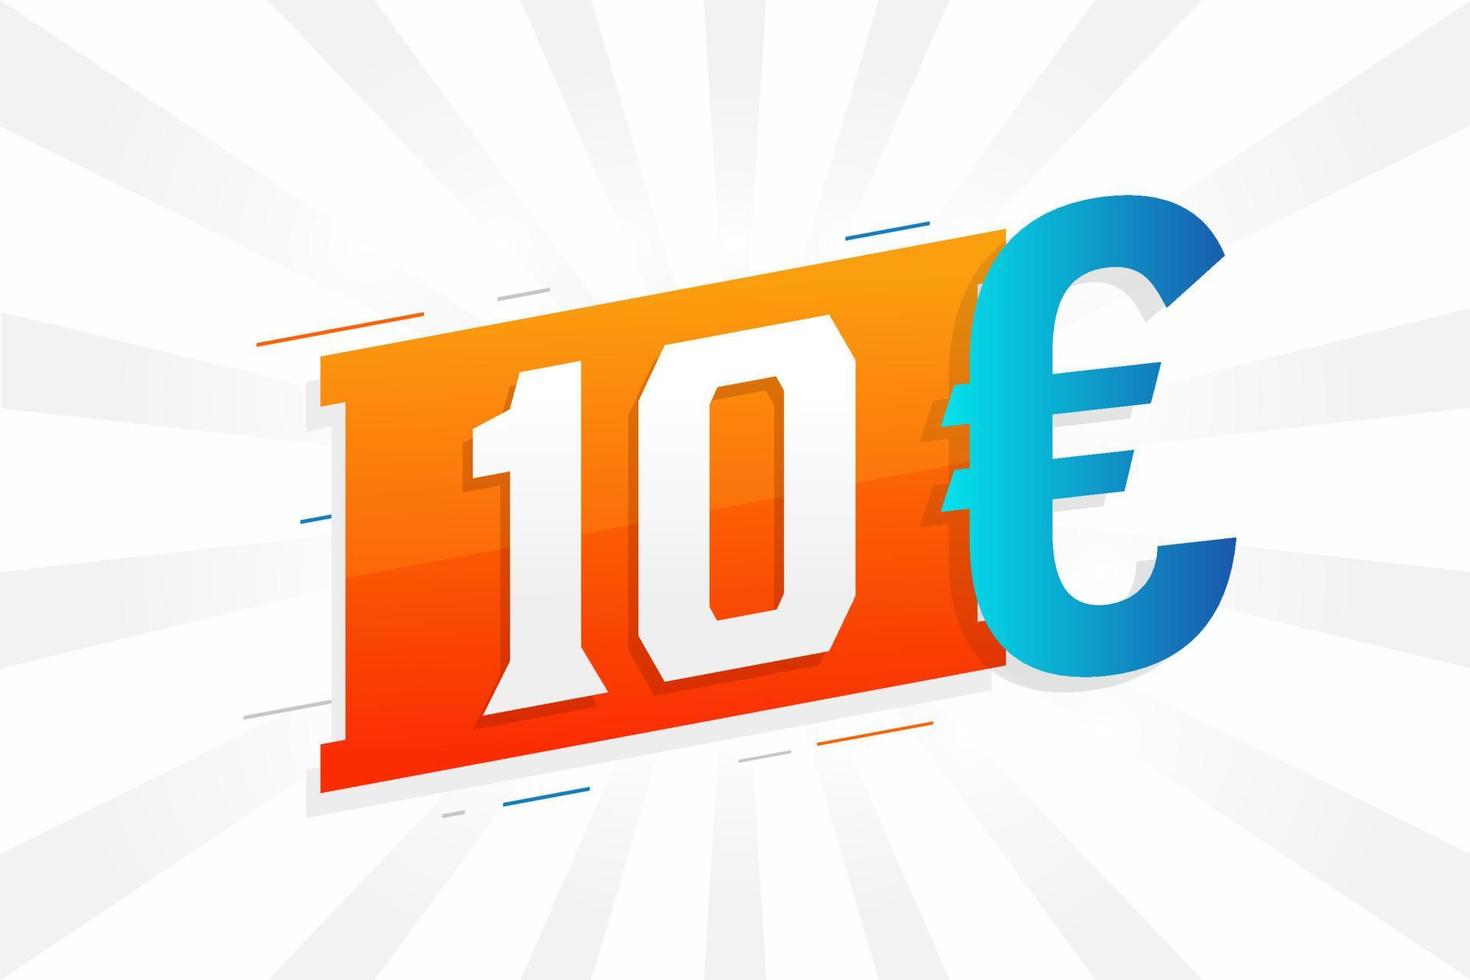 10 Euro Currency vector text symbol. 10 Euro European Union Money stock vector